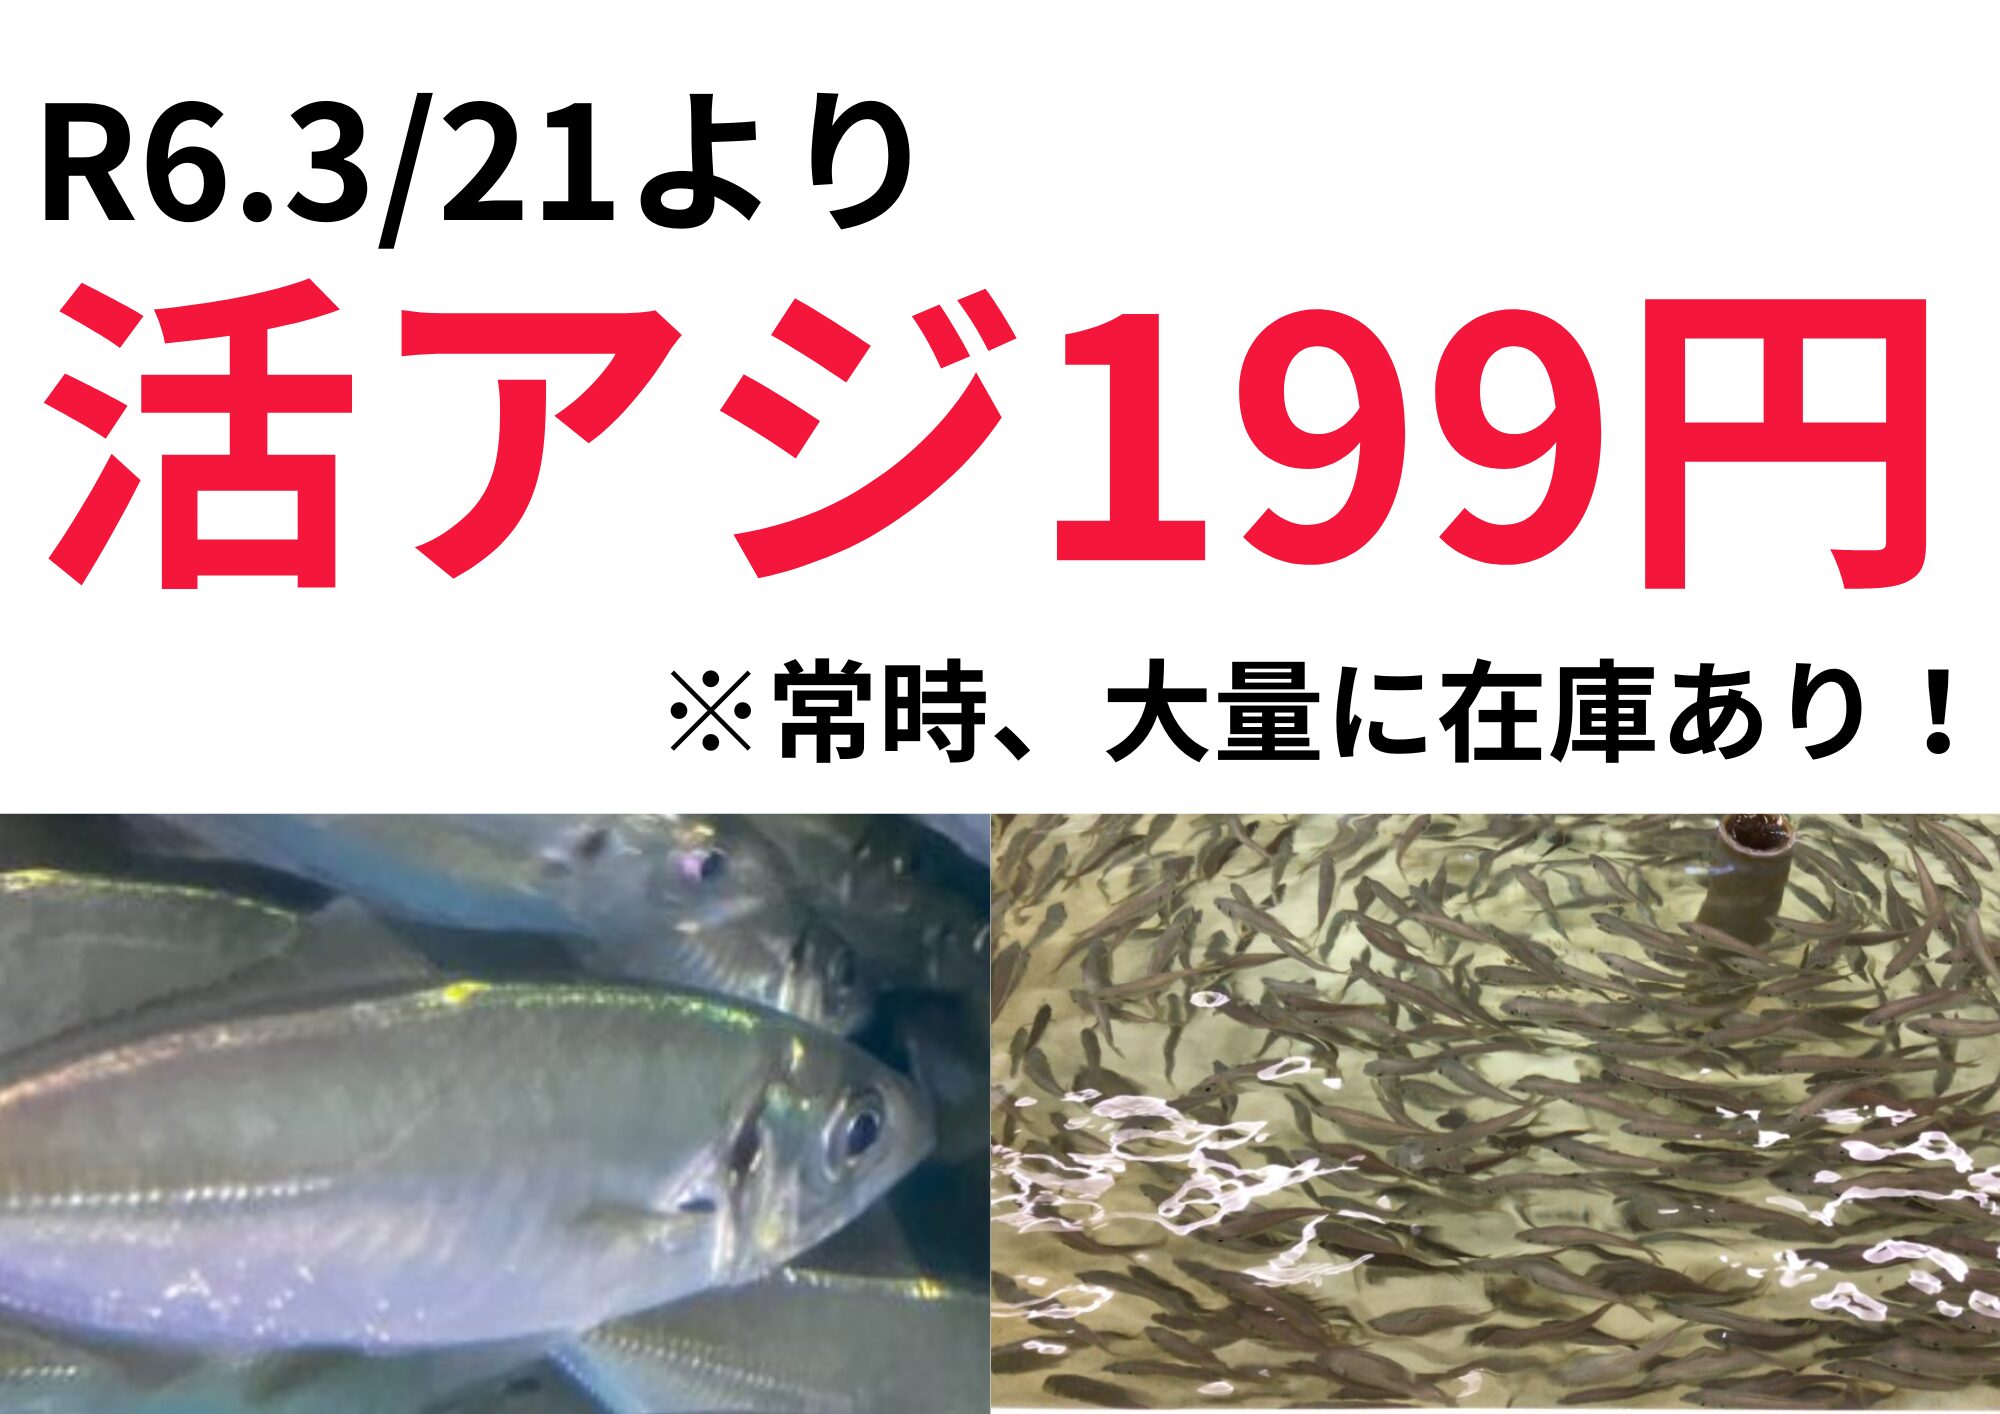 活アジ199円です。ご了承ください。アオリイカ釣りエサ。在庫あり。釣太郎